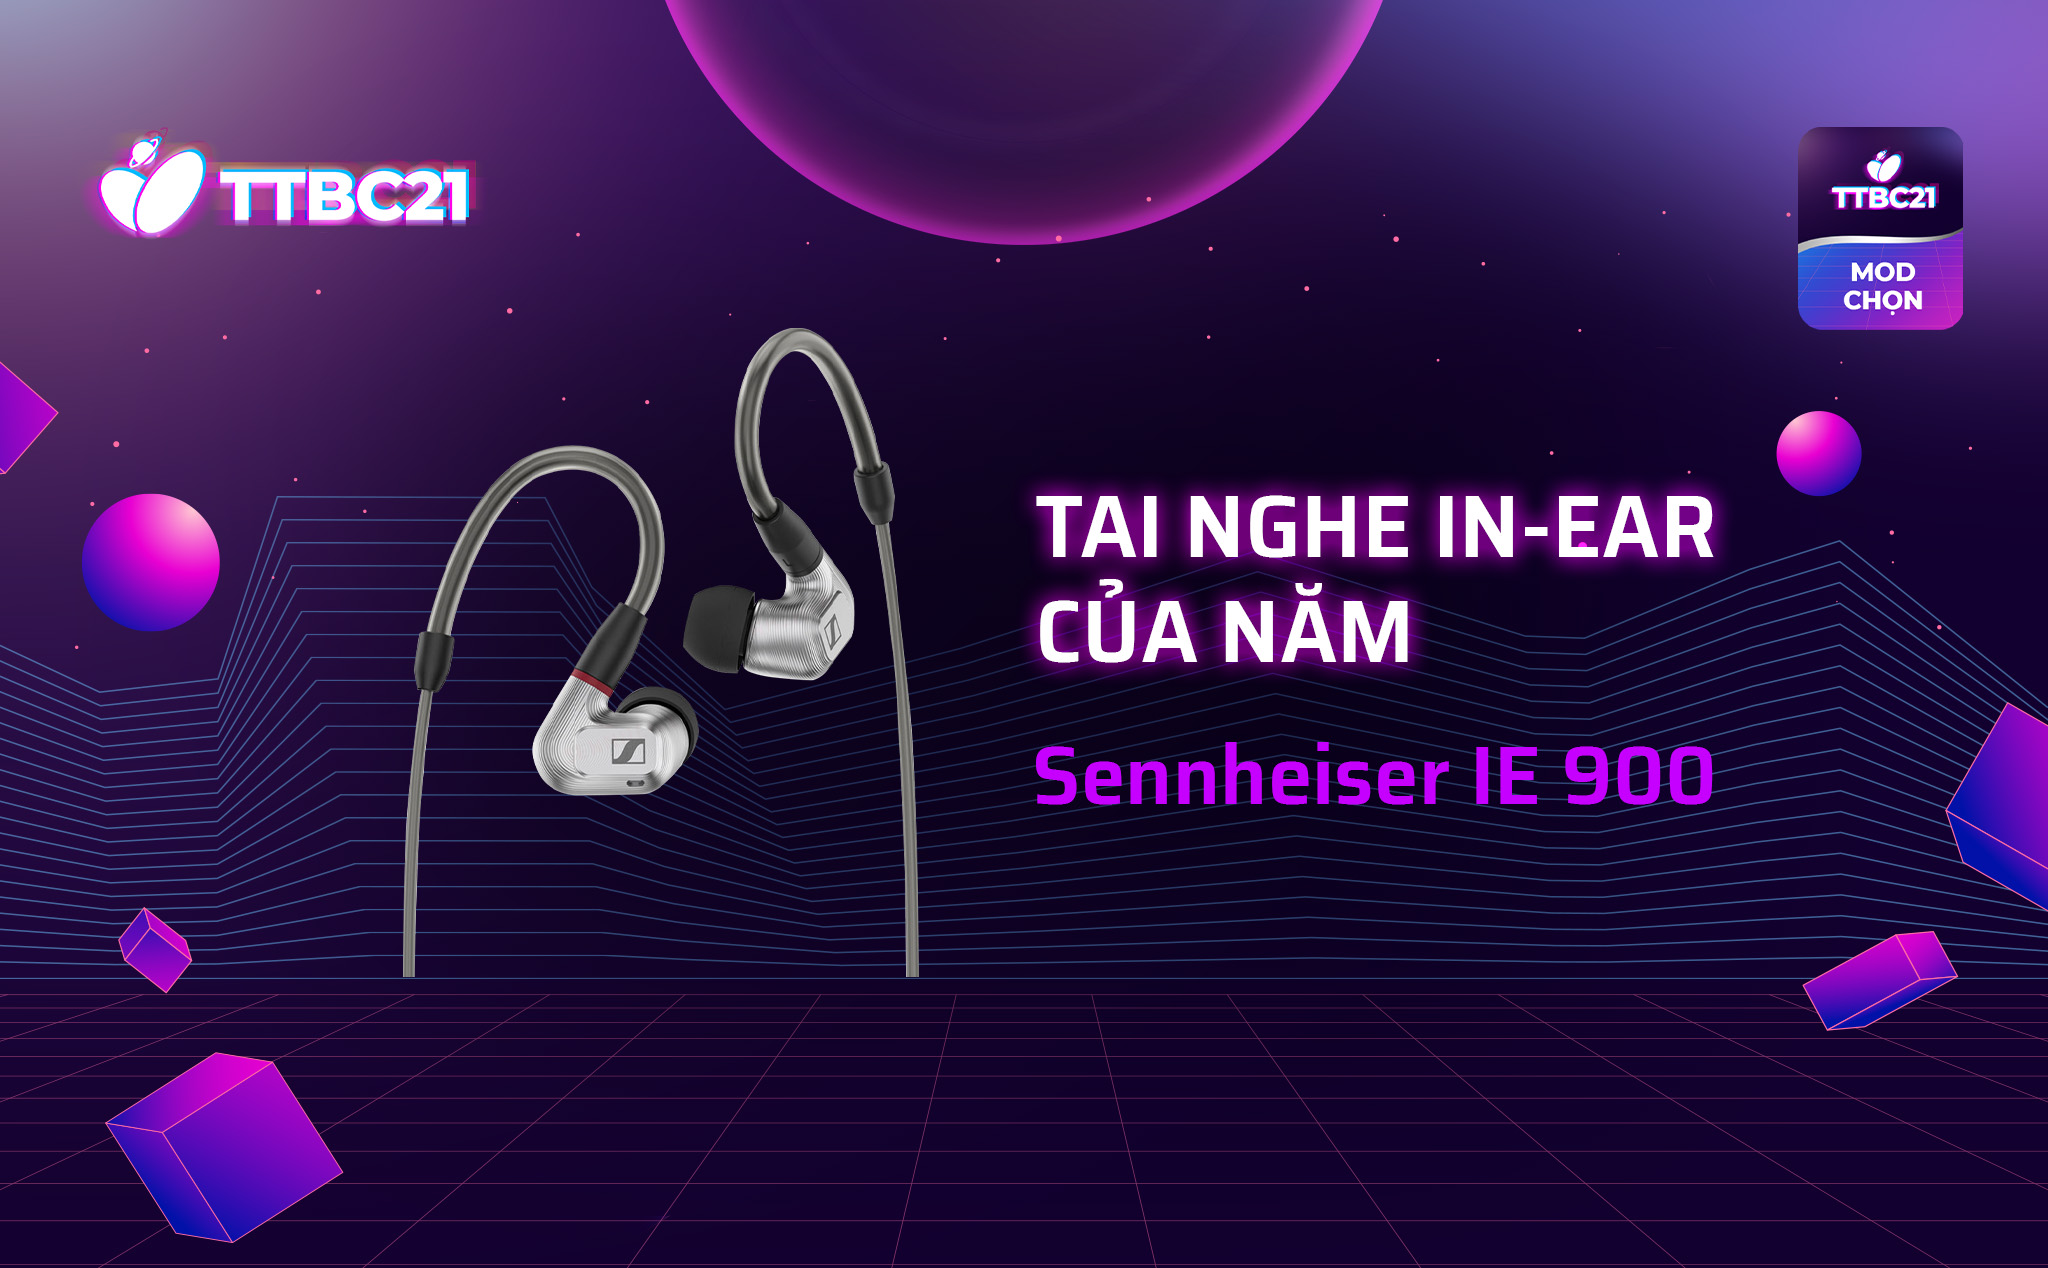 Tai nghe in-ear của năm: Sennheiser IE 900